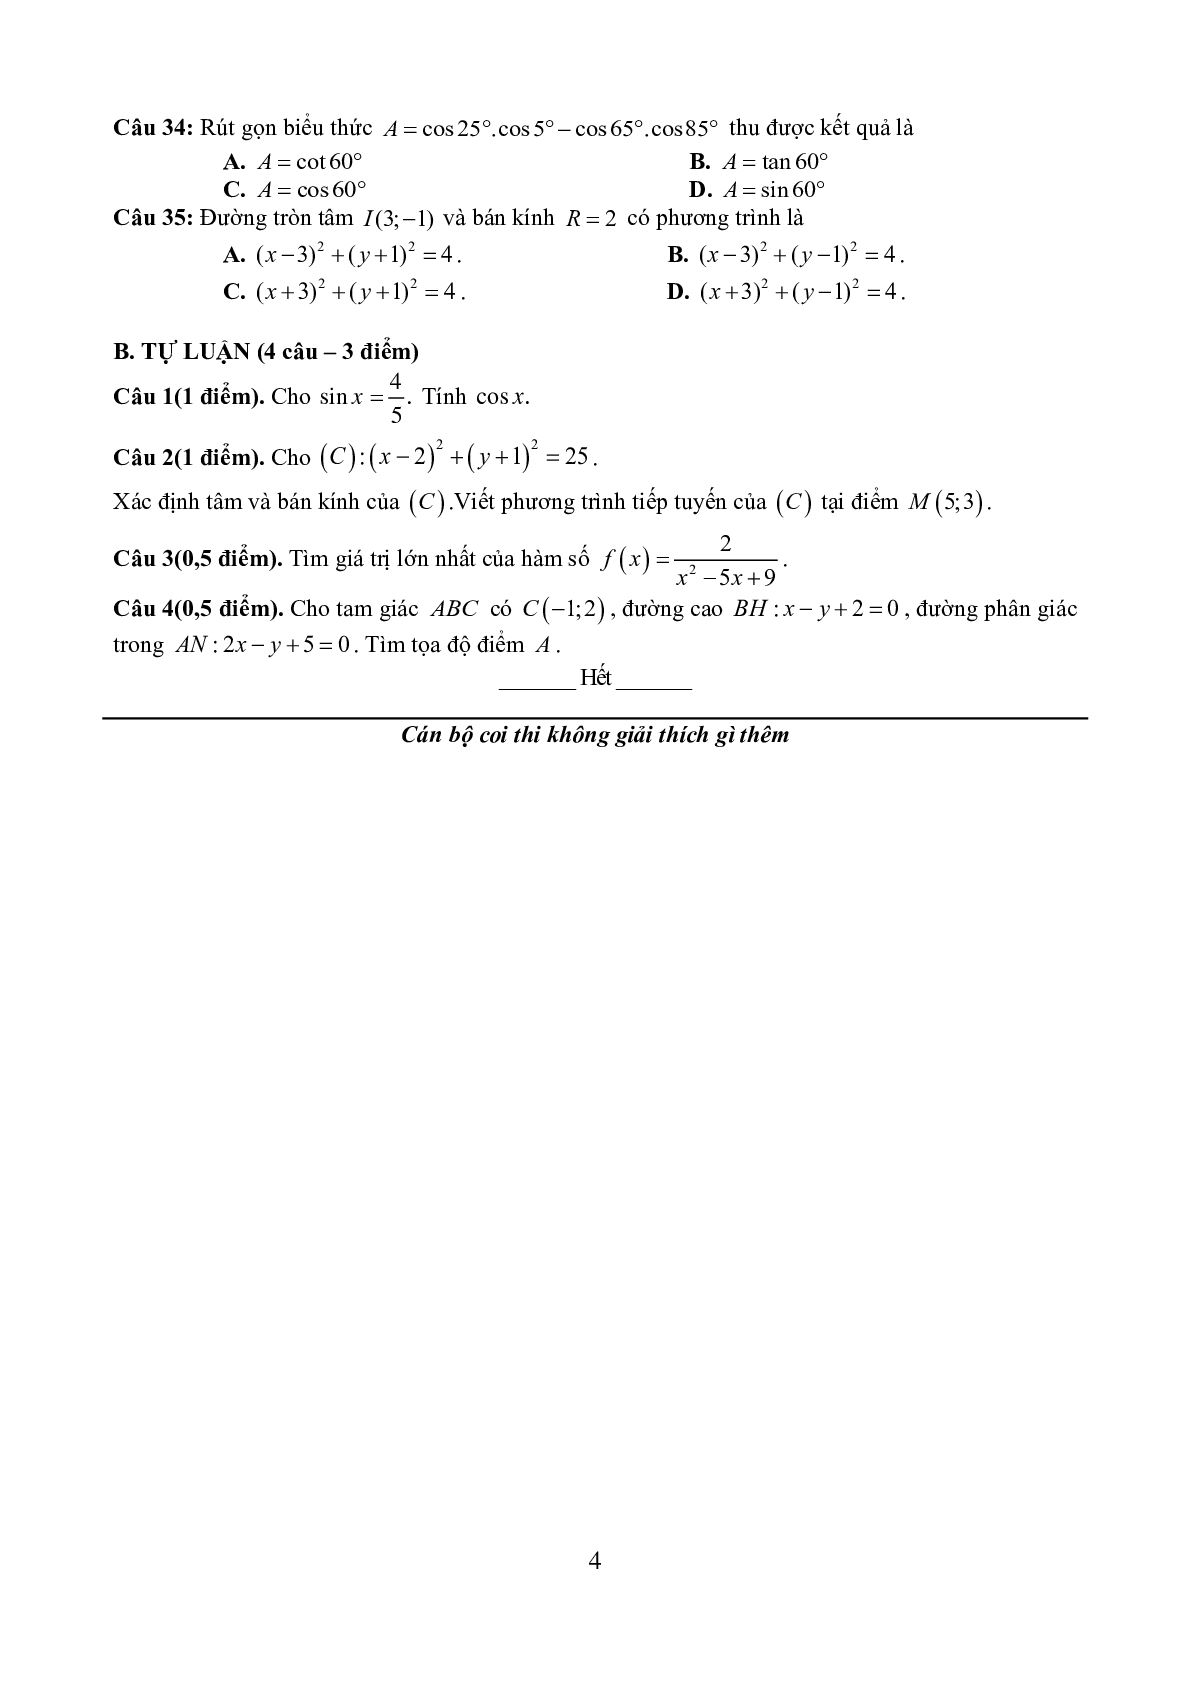 Đề thi cuối kì 2 môn toán 10 trườngTHPT ĐoànThượng năm học 2020-2021 (trang 4)